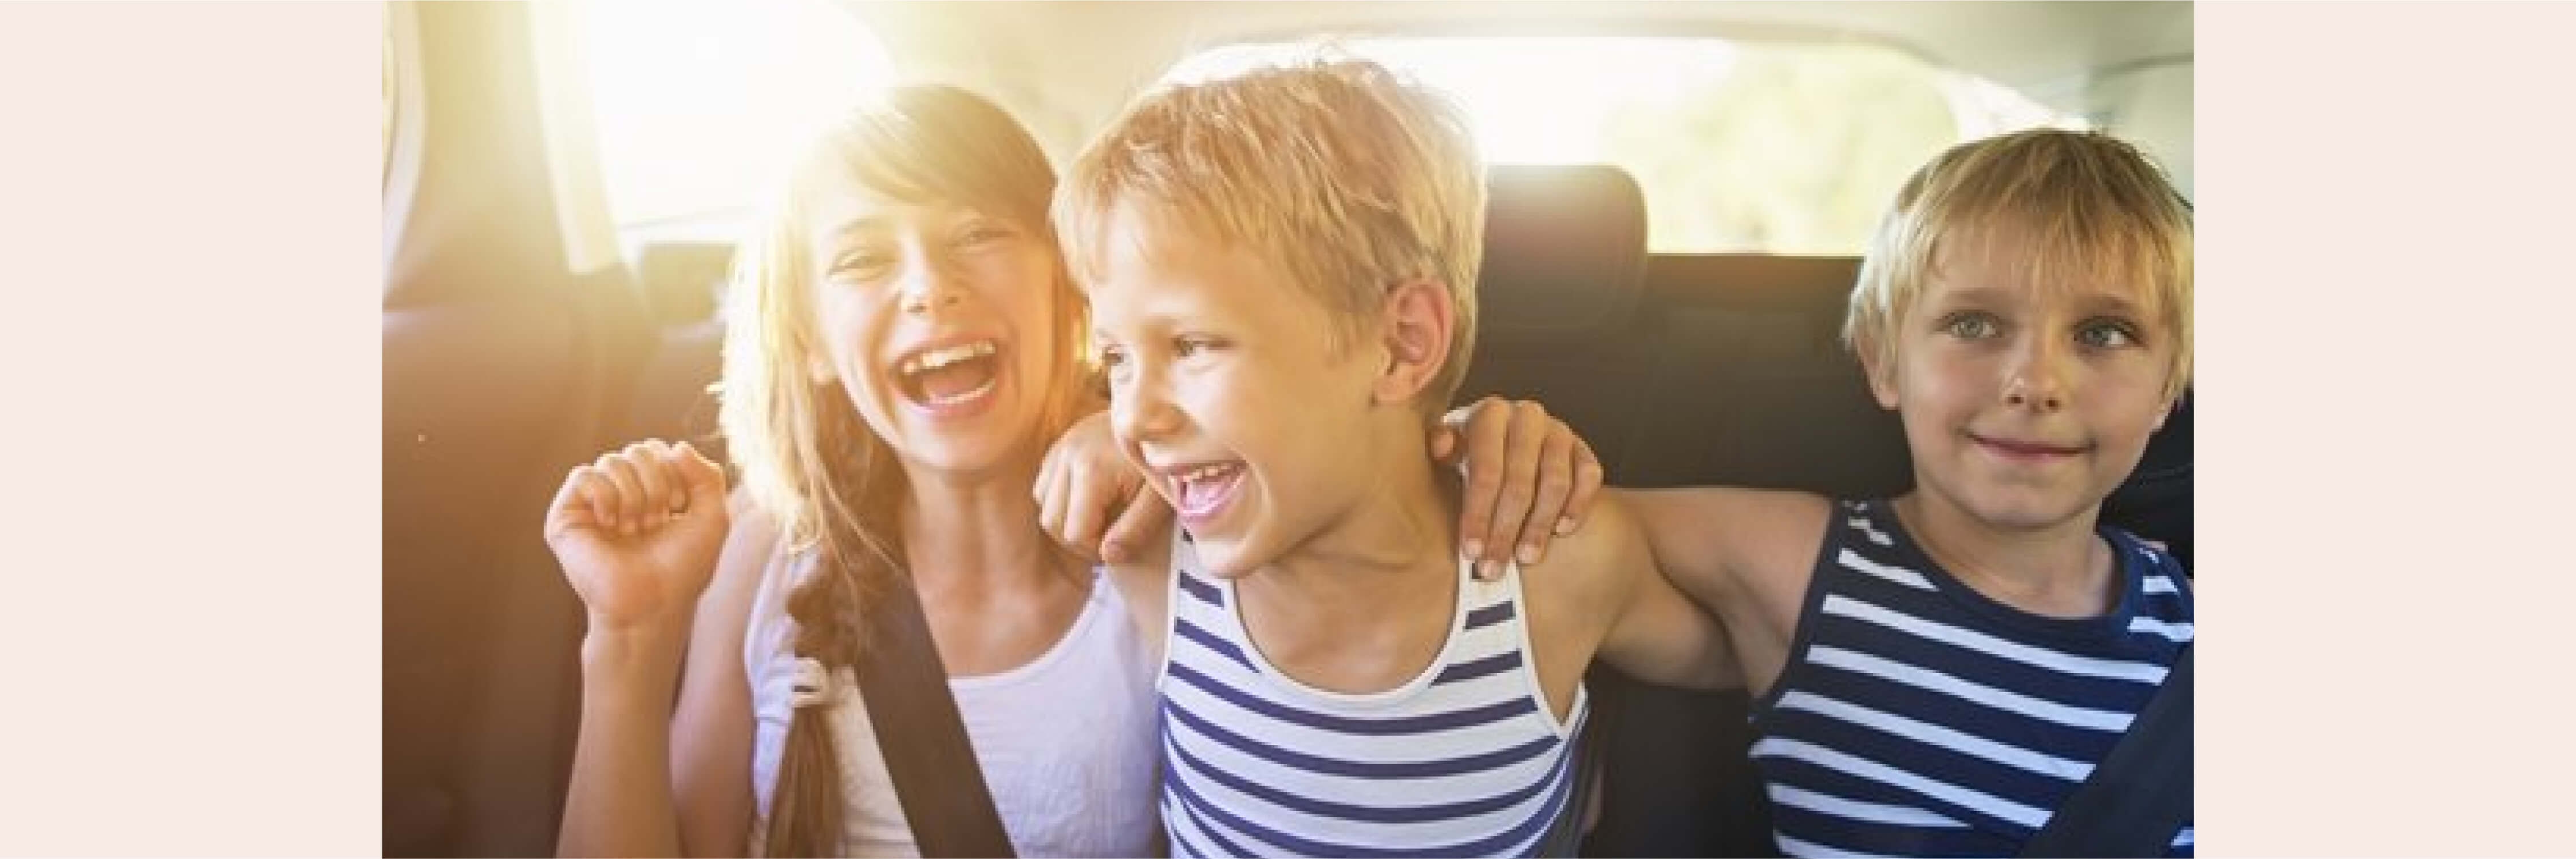 Araba Yolculuklarında Çocuklara Eşlik Edecek Podcast Önerileri